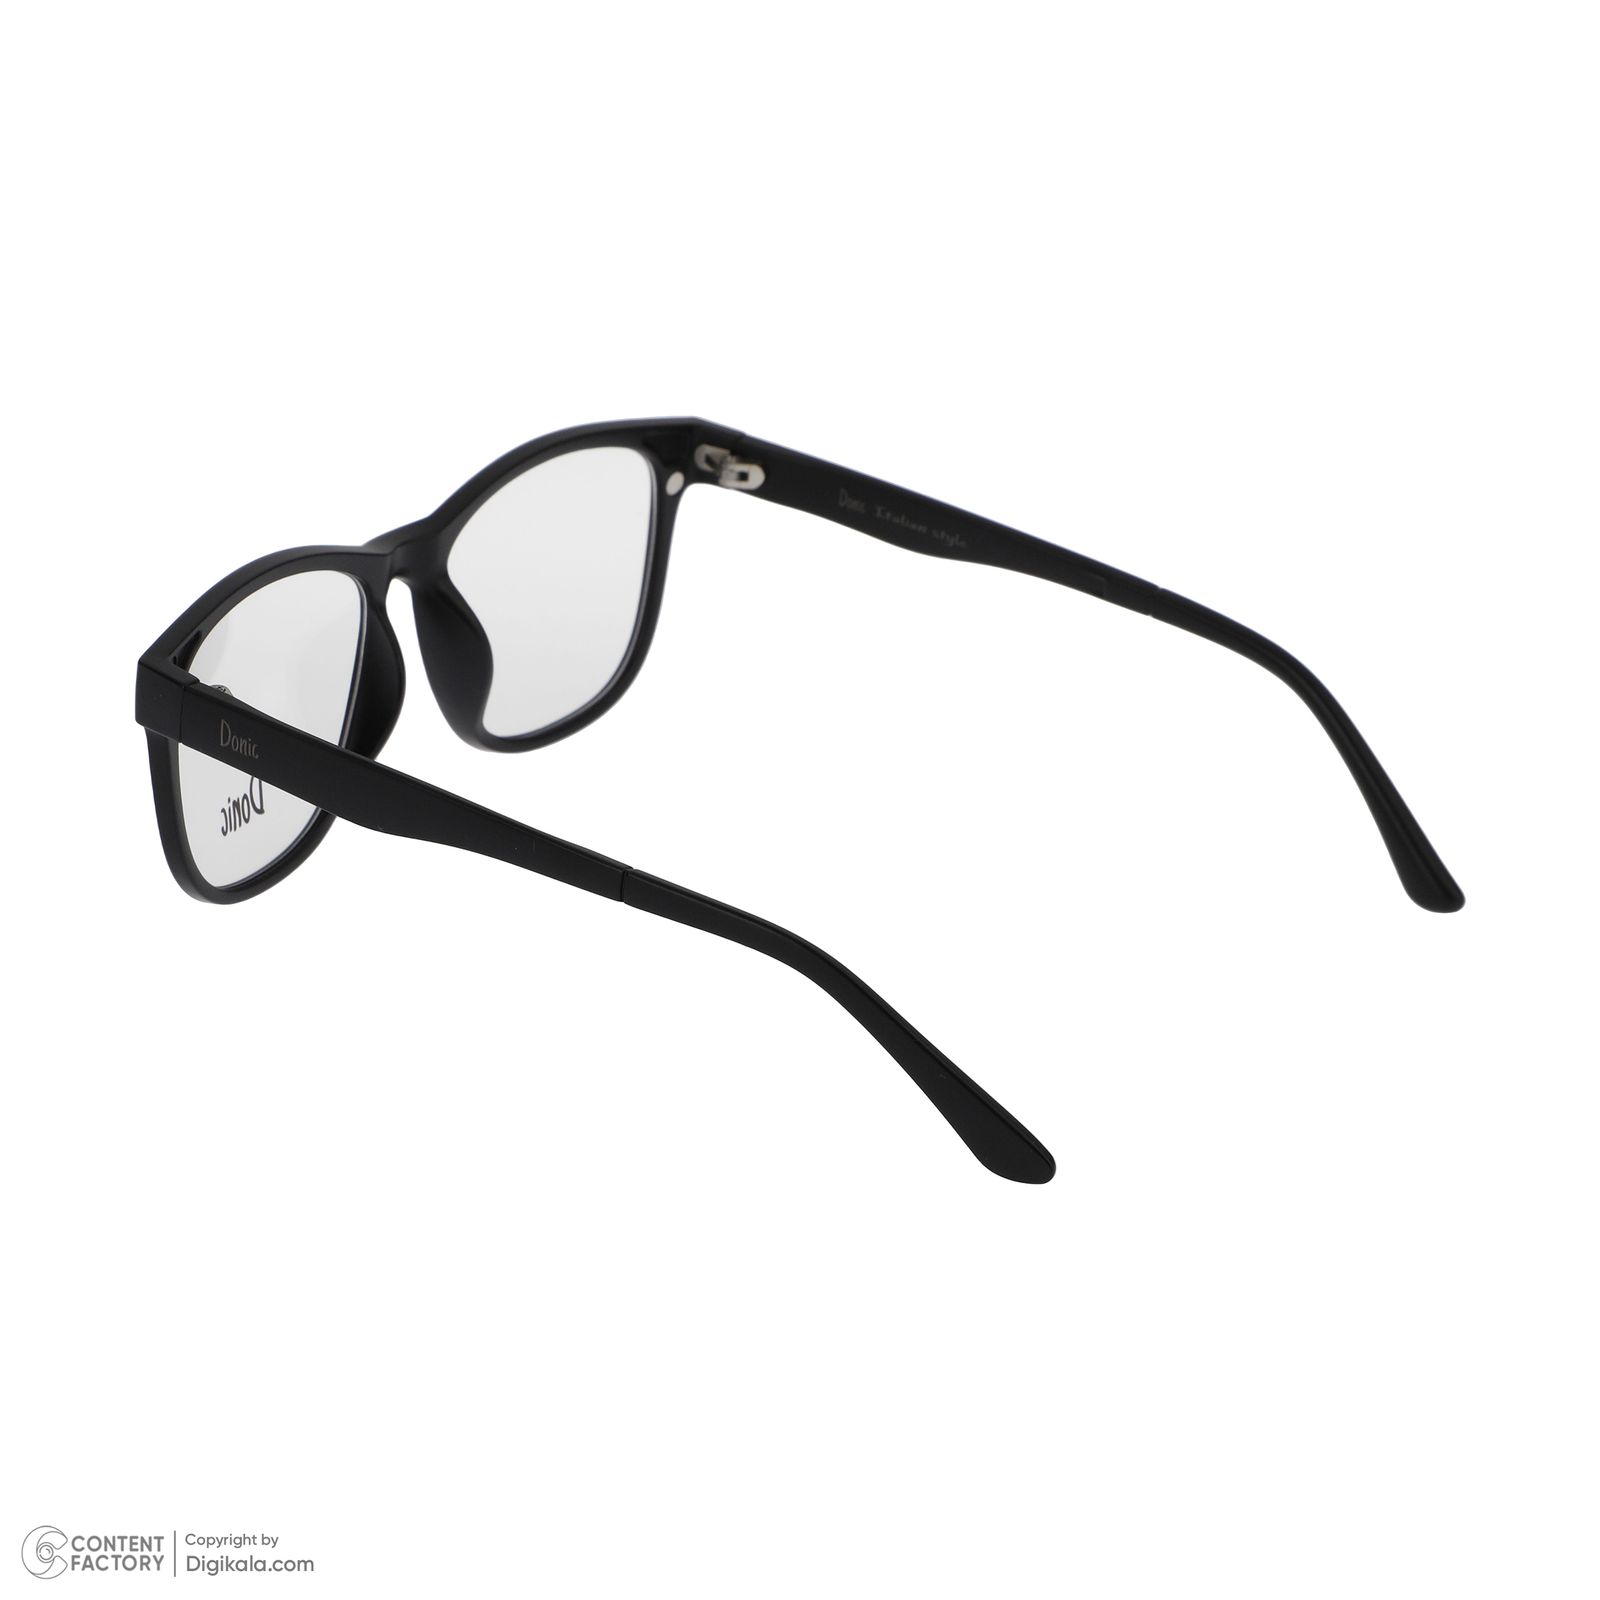 فریم عینک طبی دونیک مدل tr2230-c2 به همراه کاور آفتابی مجموعه 5 عددی -  - 5